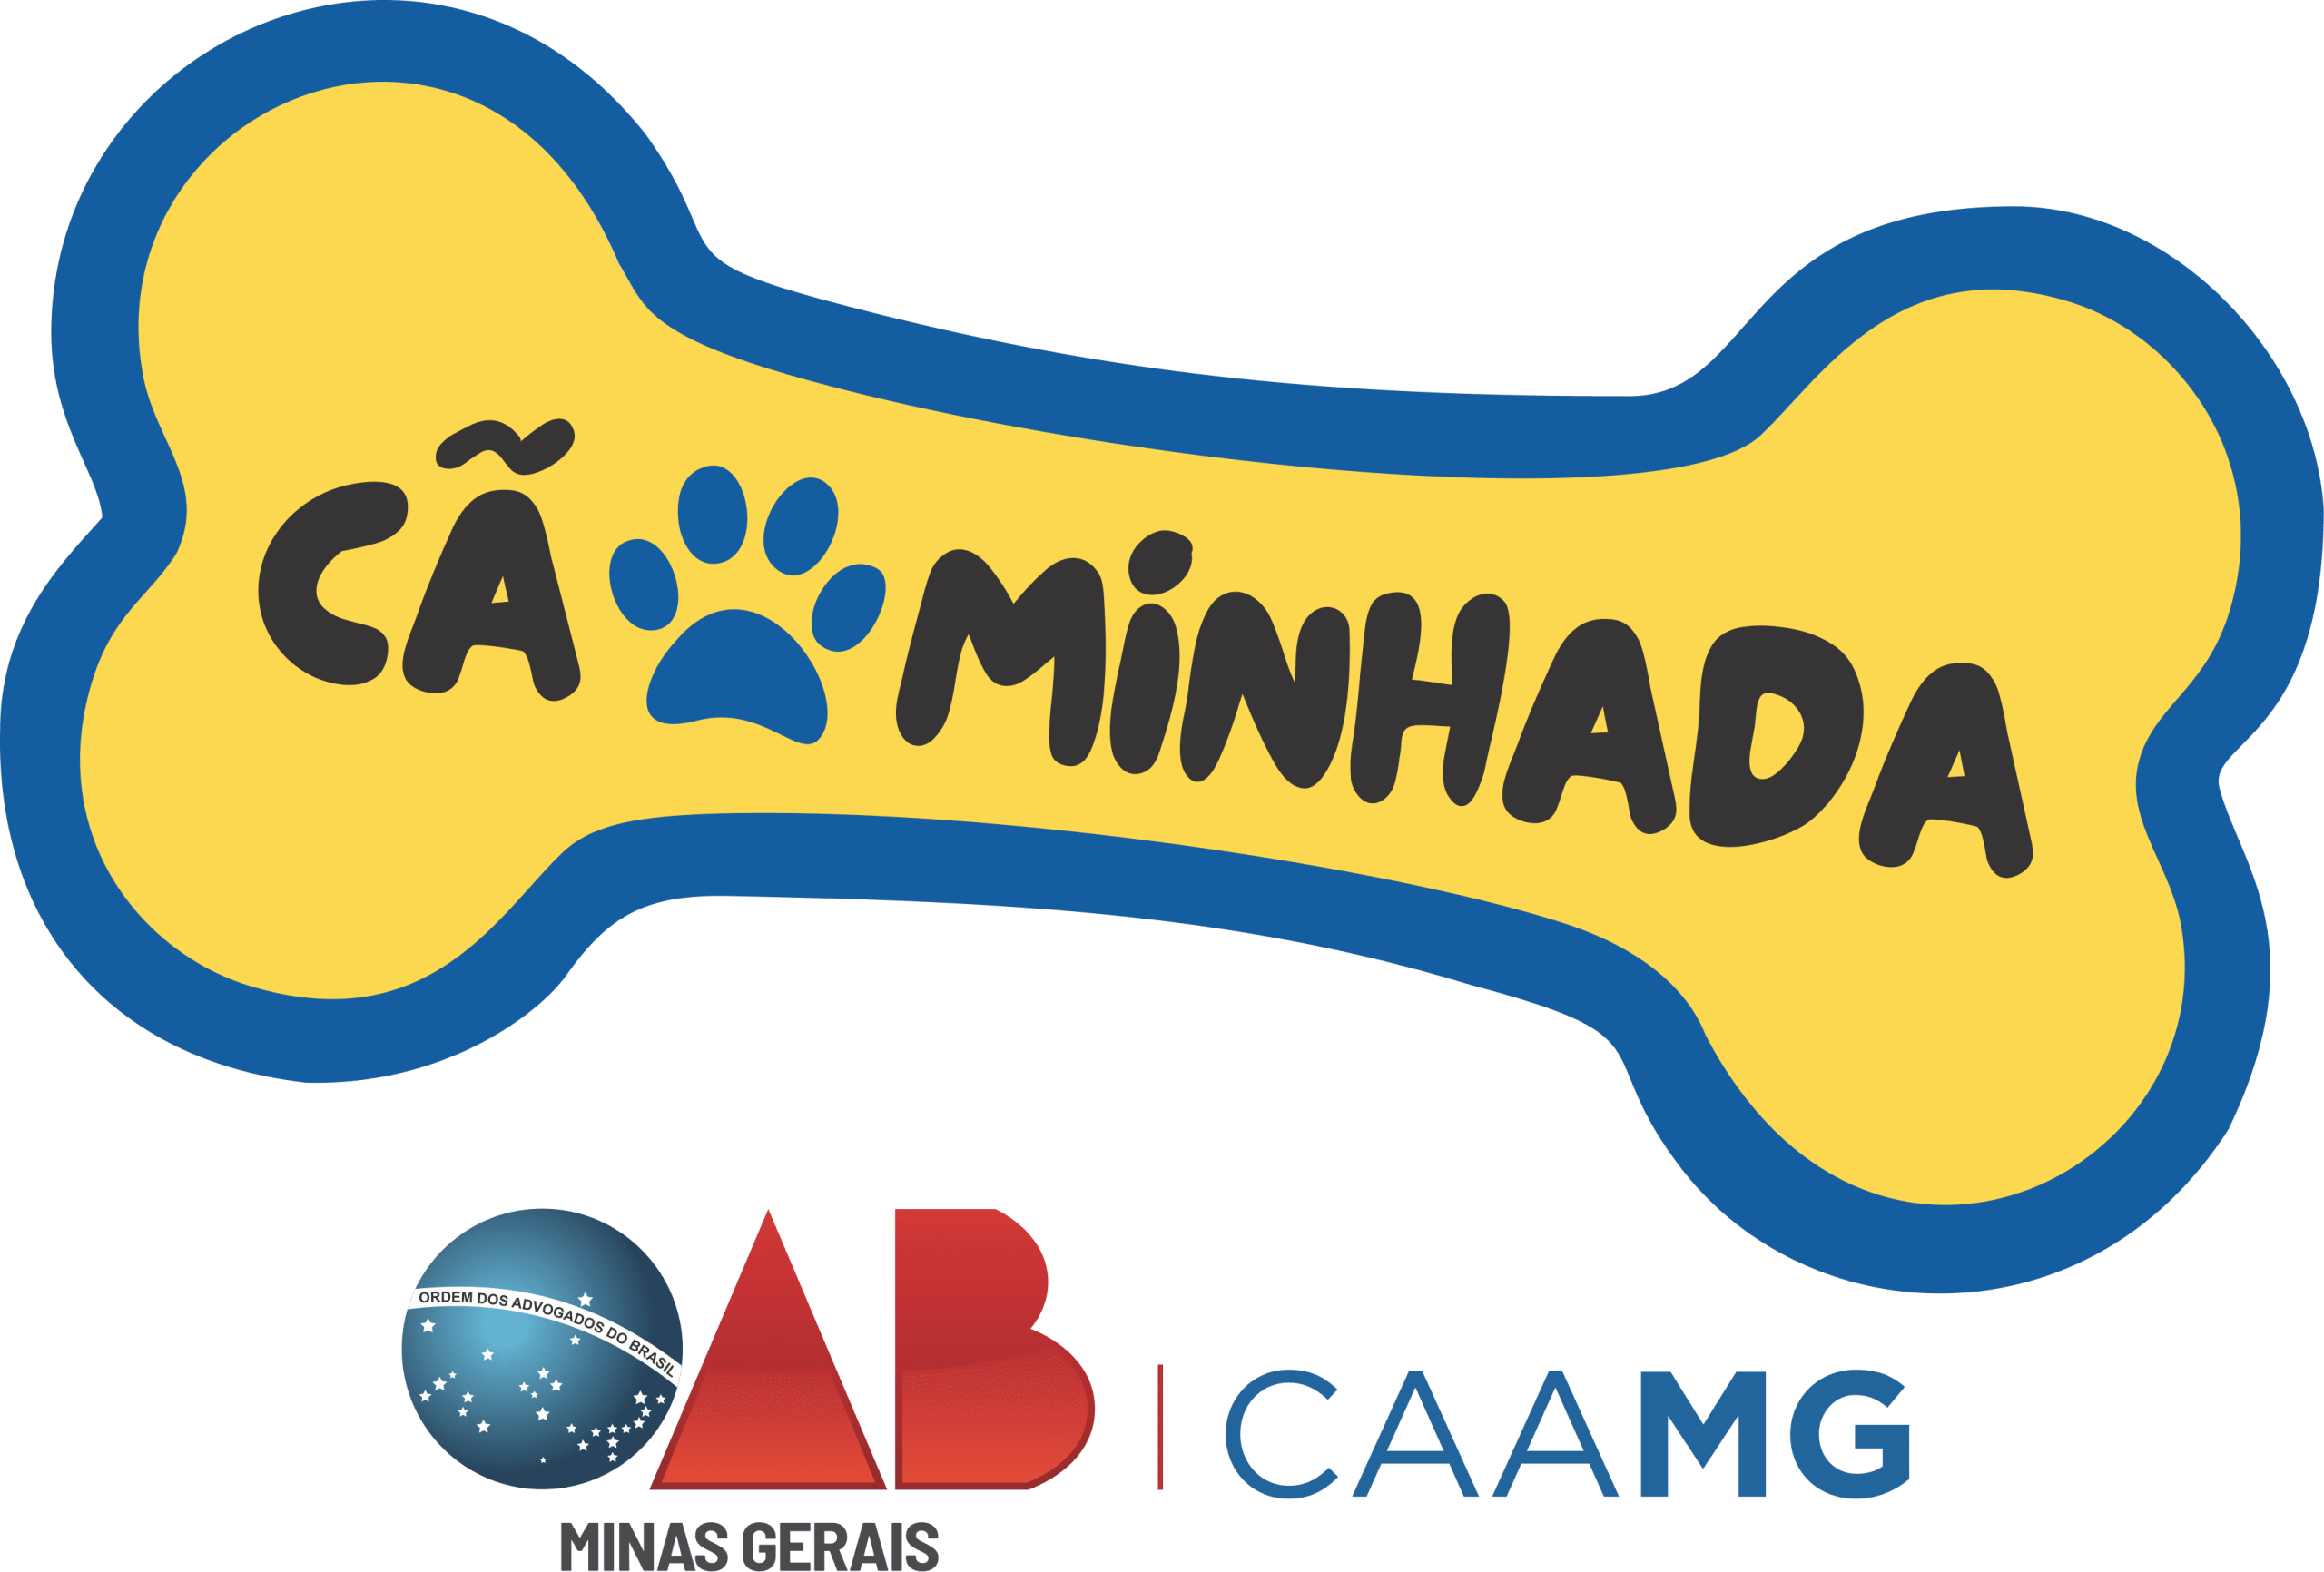 logo_caominhada